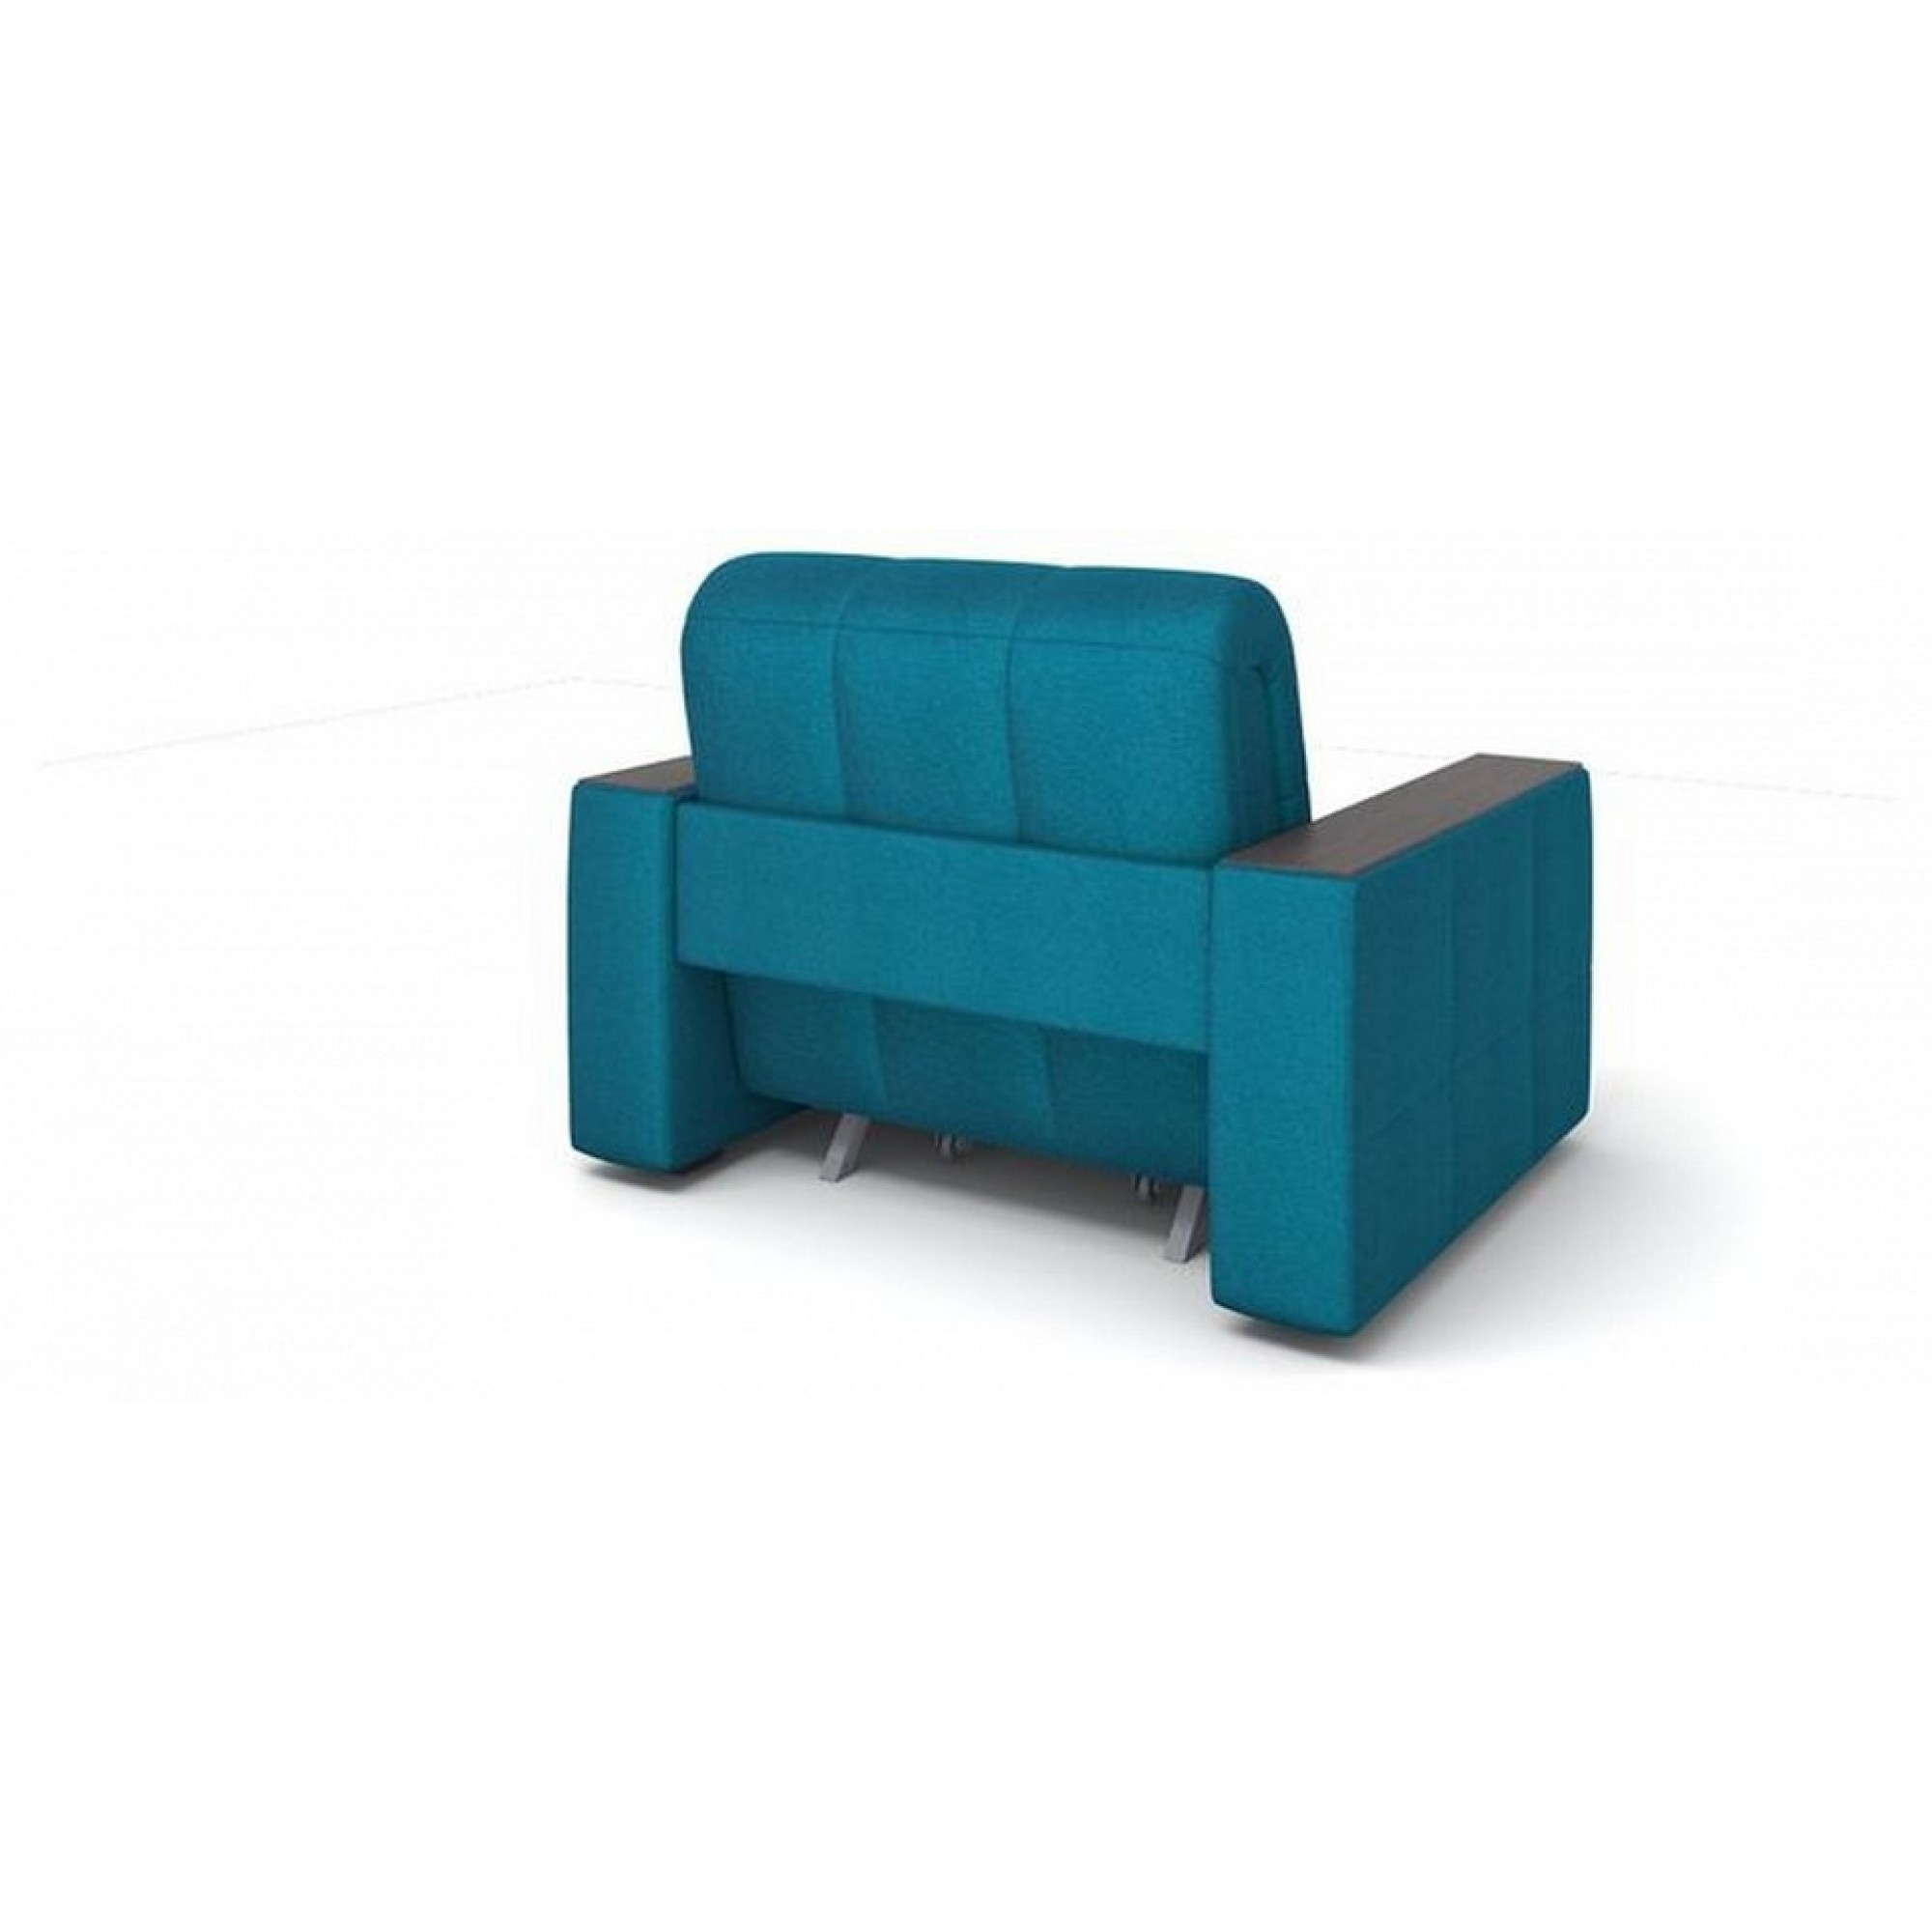 Кресло-кровать Ergonomic Box Middle голубой ORM_85-207-Ergonomic-Box-Middle-1